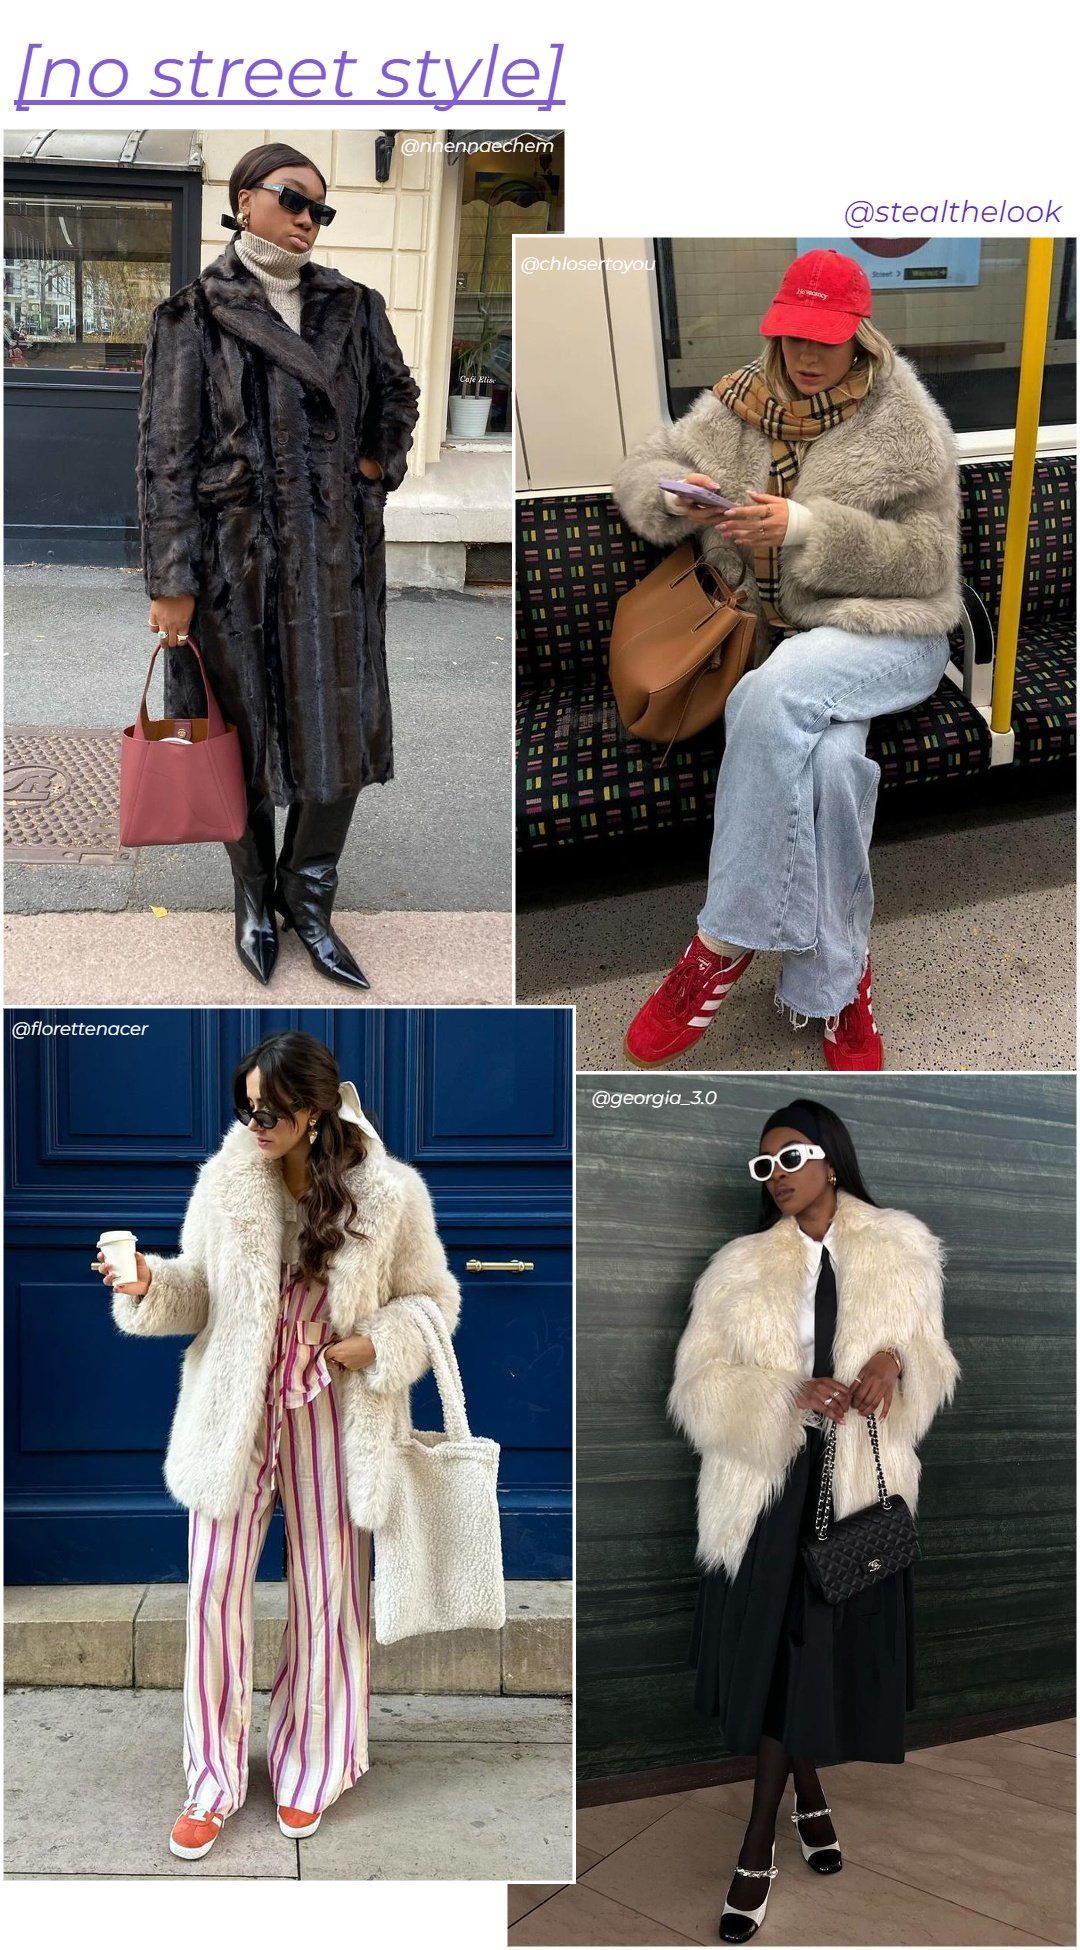 Nnenna Echem, Florette Nacer, Chloé Allain e @georgia_3.0 - roupas diversas - casaco de inverno - inverno - colagem de imagens - https://stealthelook.com.br